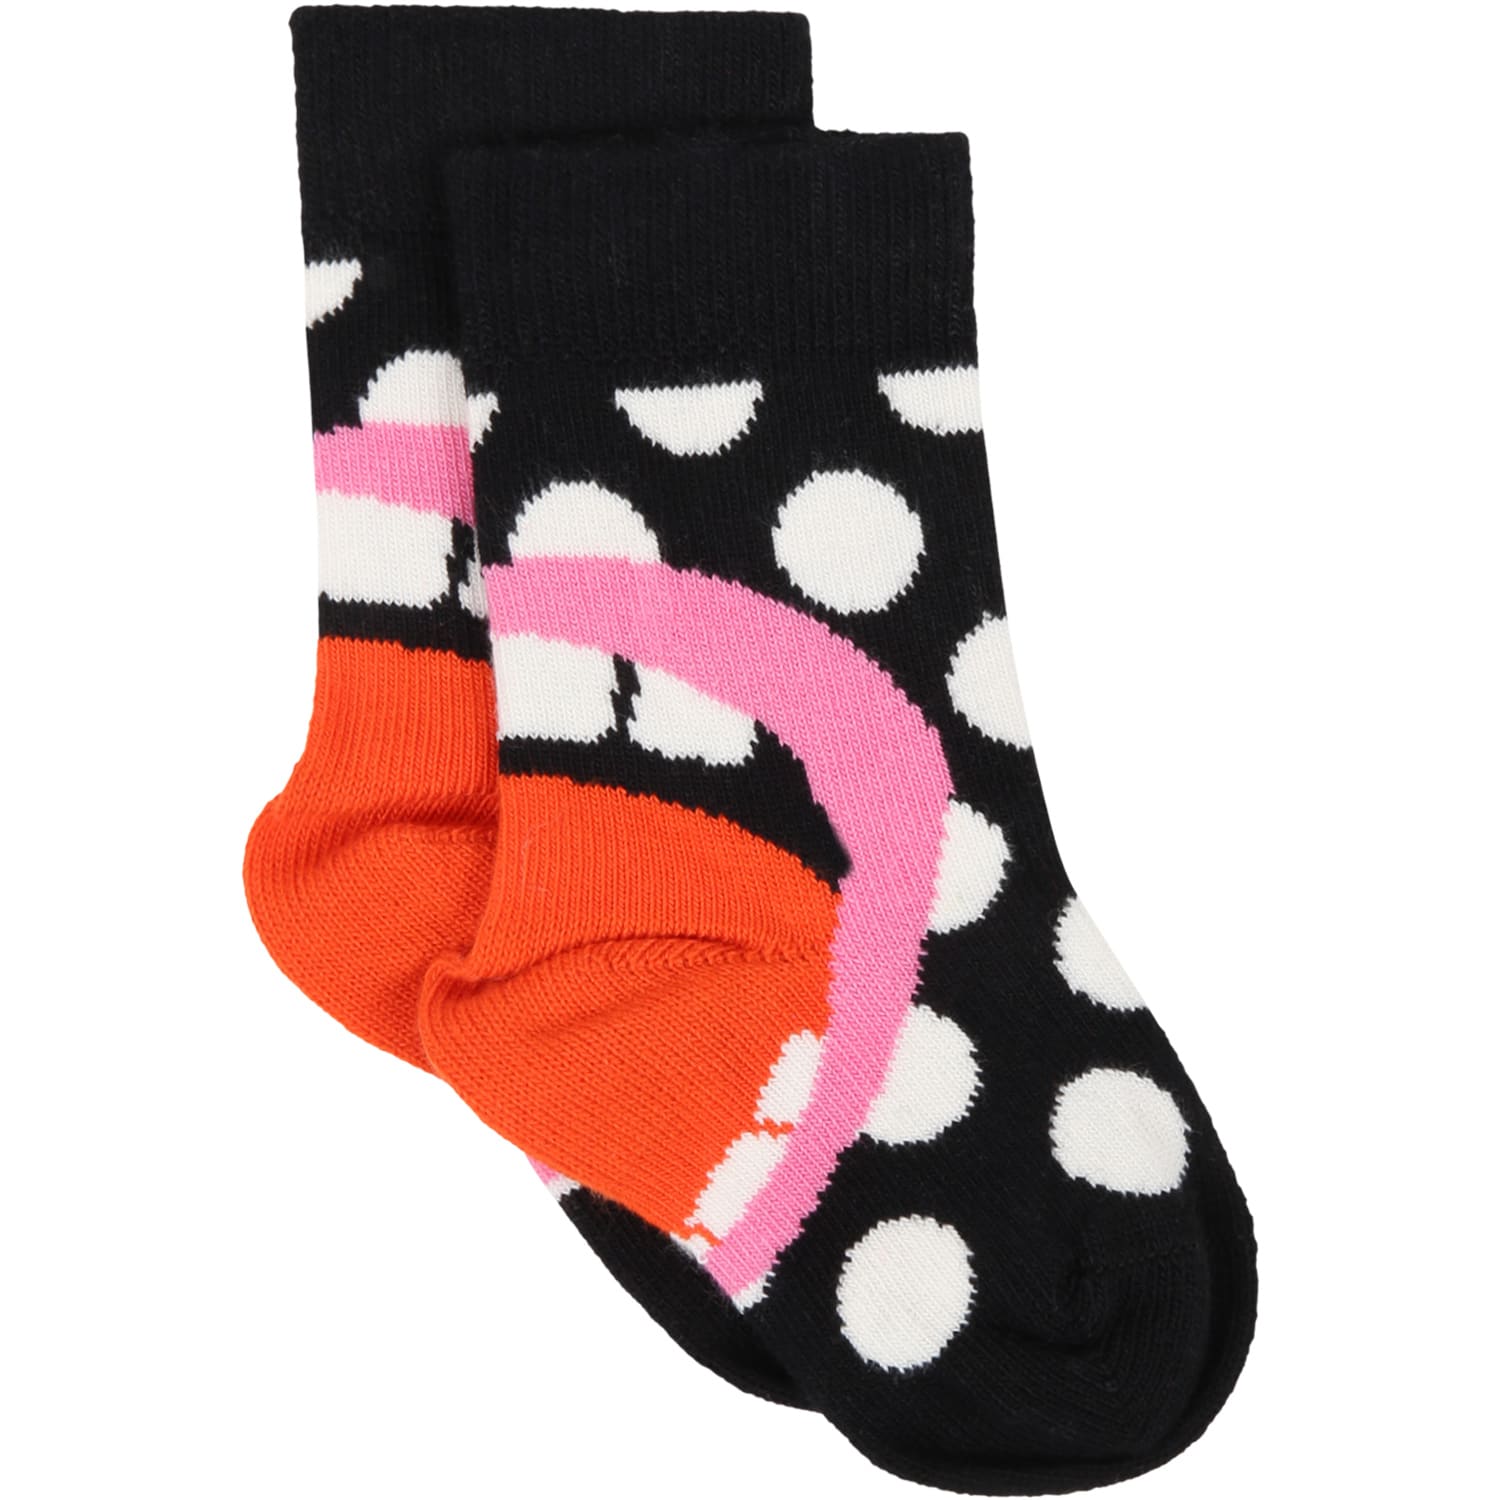 Happy Socks Black Socks For Kids With Polka-dots